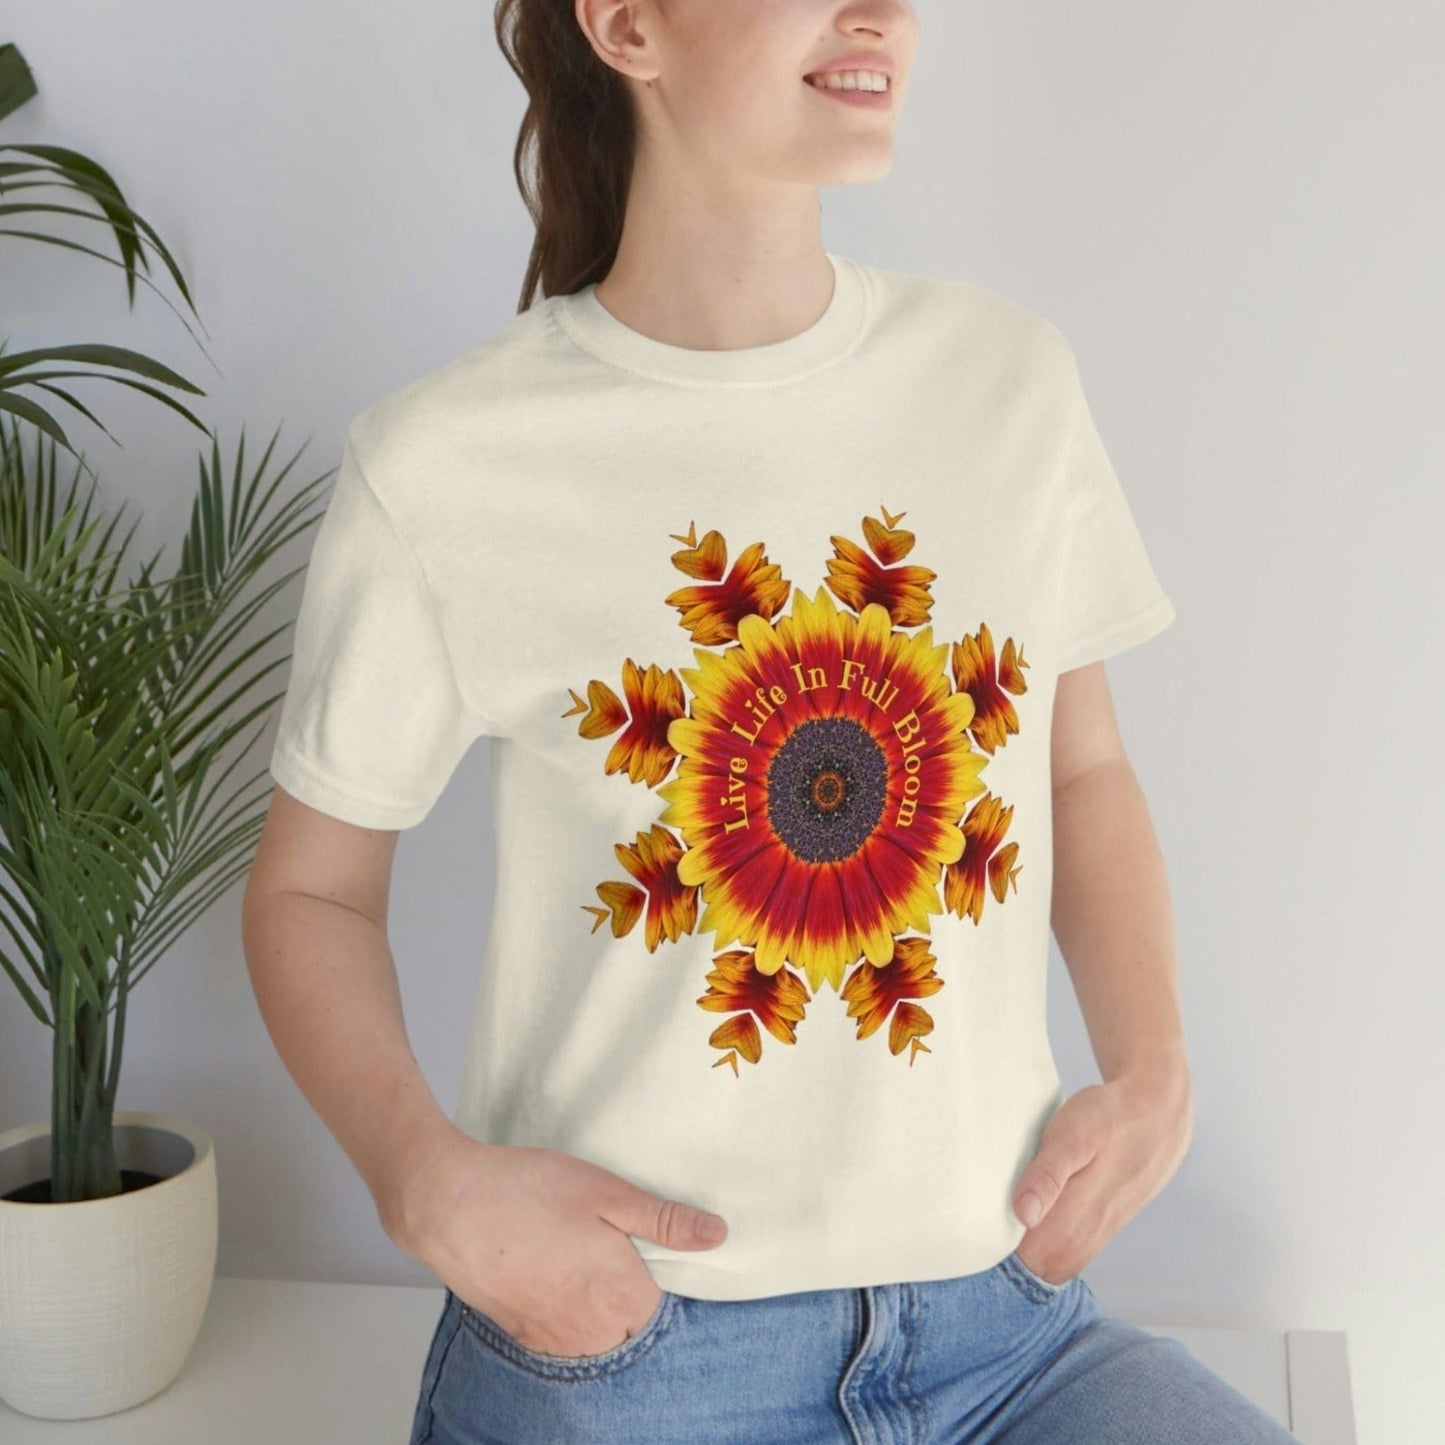 Sunflower TShirt, Top Best Selling Shirts, Zen Poet Shirt, Kawaii Cottage Core Shirt, Fun Shirt Designs, Cute Shirts Teens, Kindness T Shirt